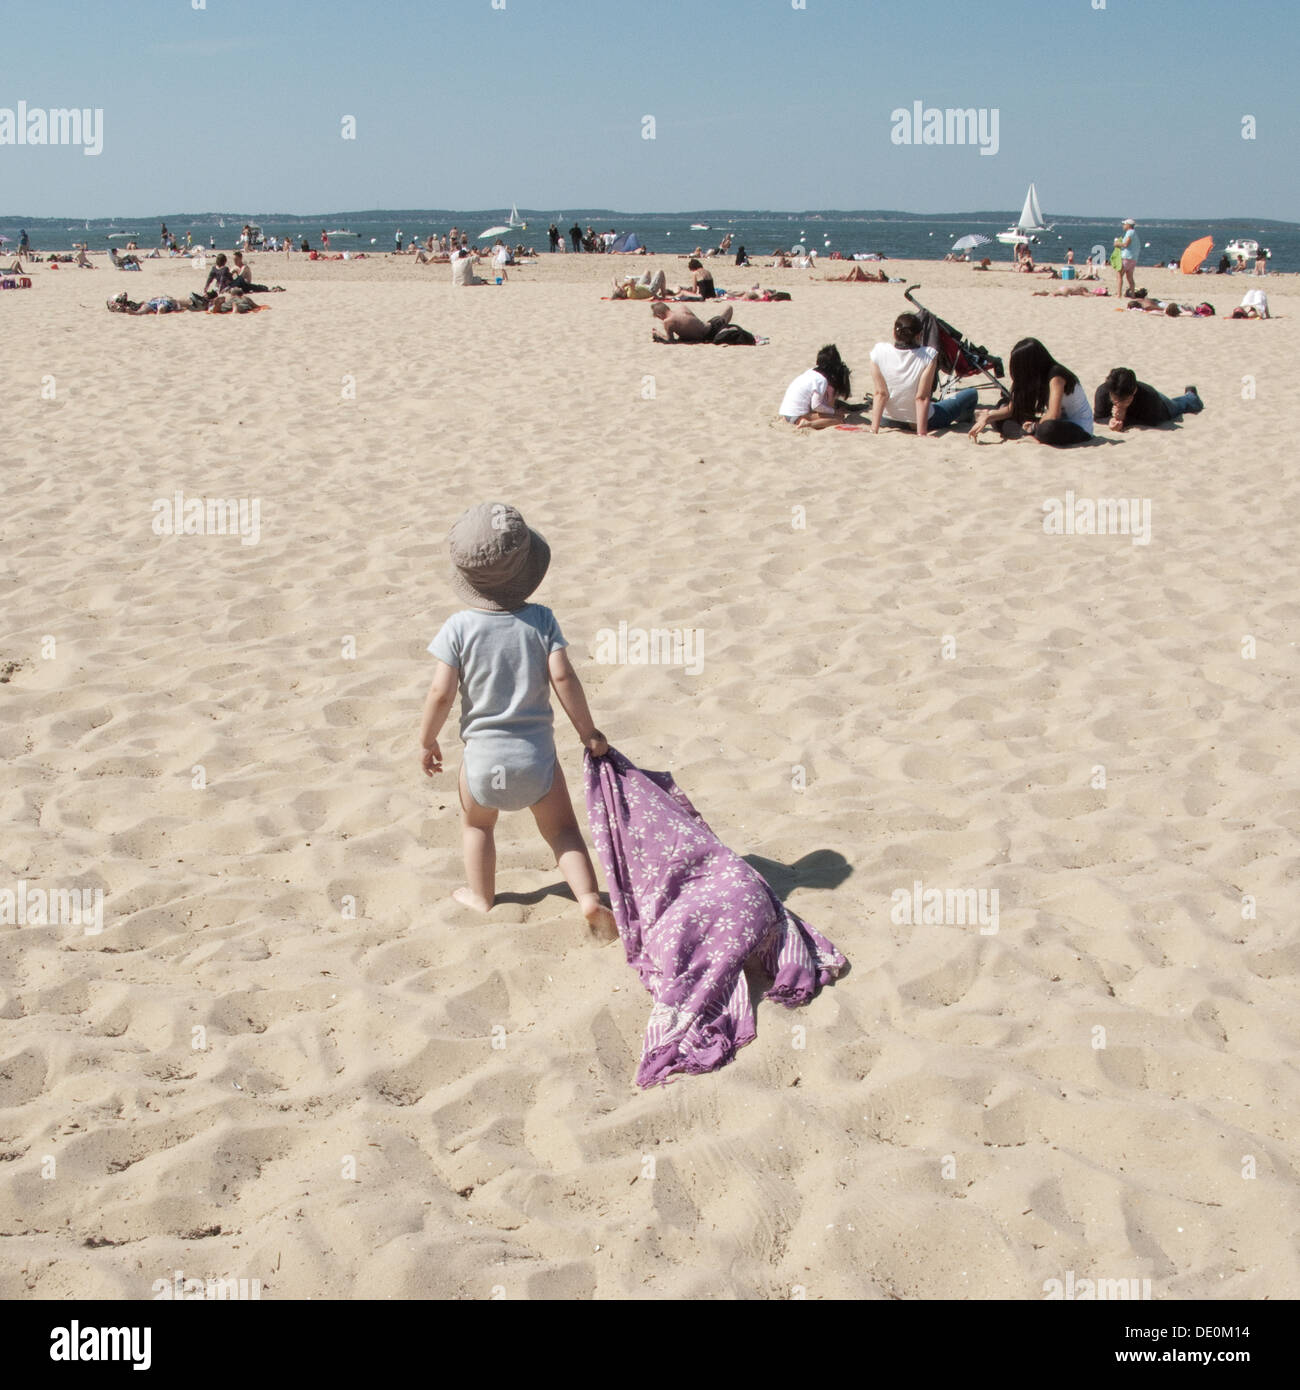 Infant camminando sulla spiaggia, trascinando una coperta dietro di lui Foto Stock